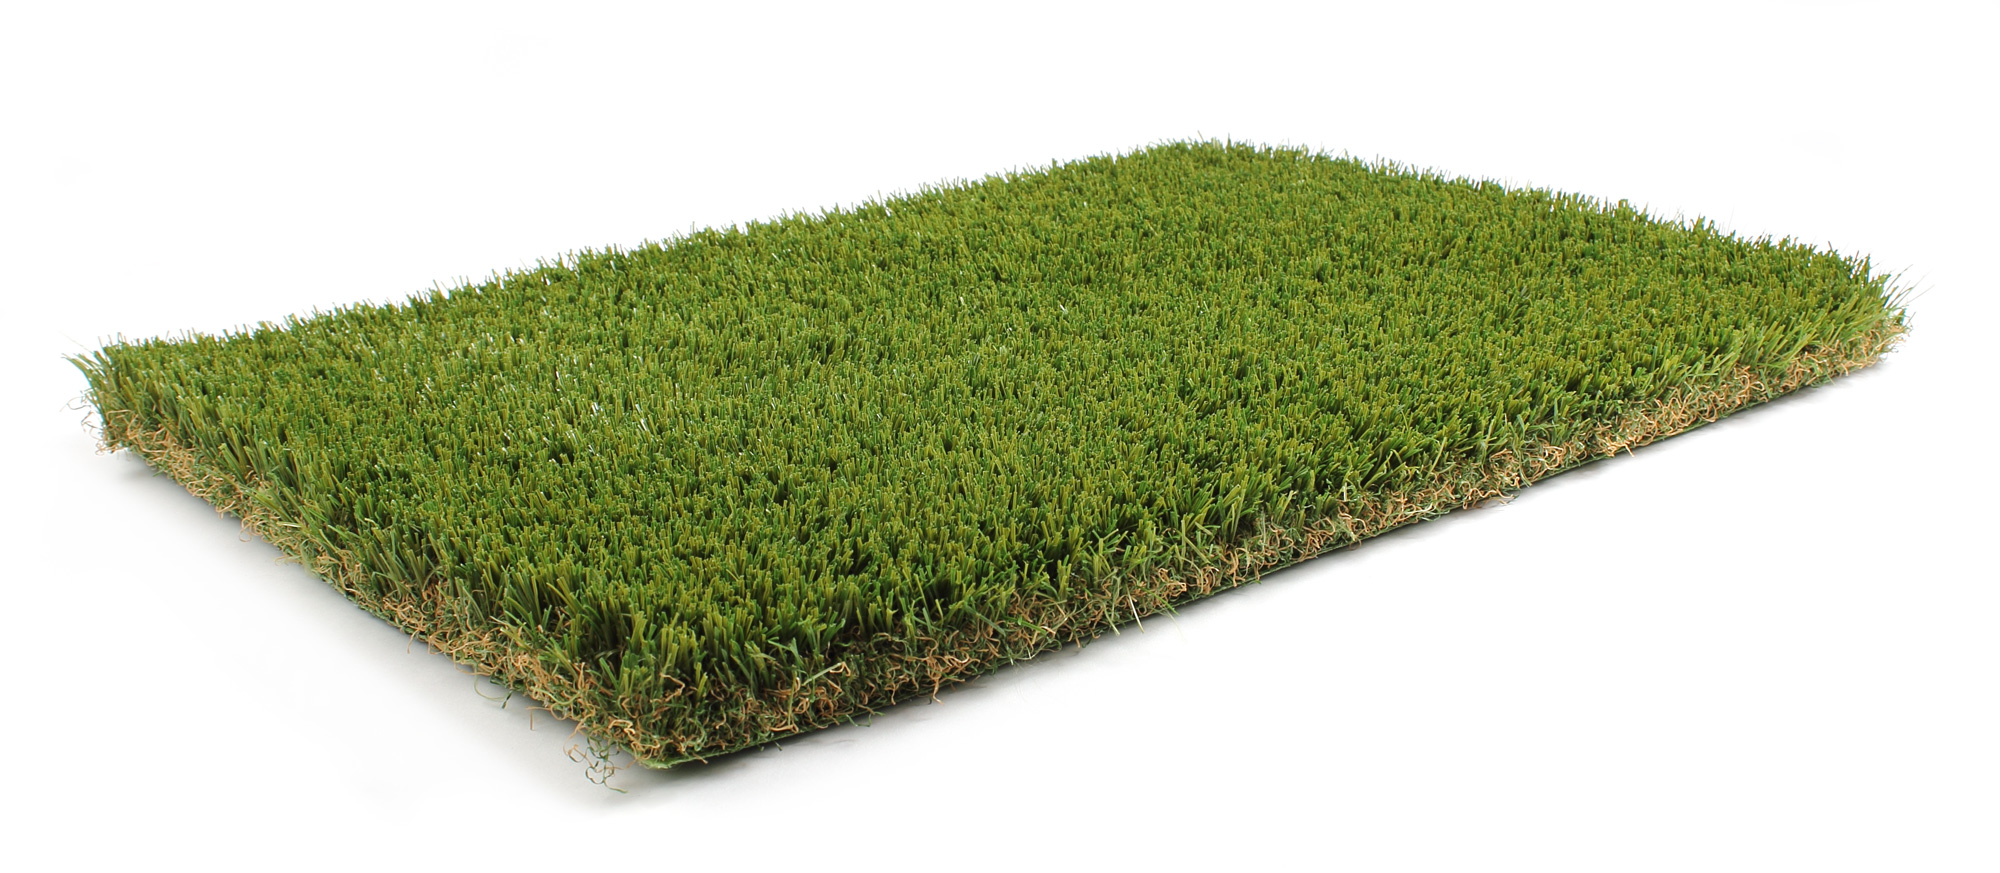 Artificial Grass Indonesia Ecosense